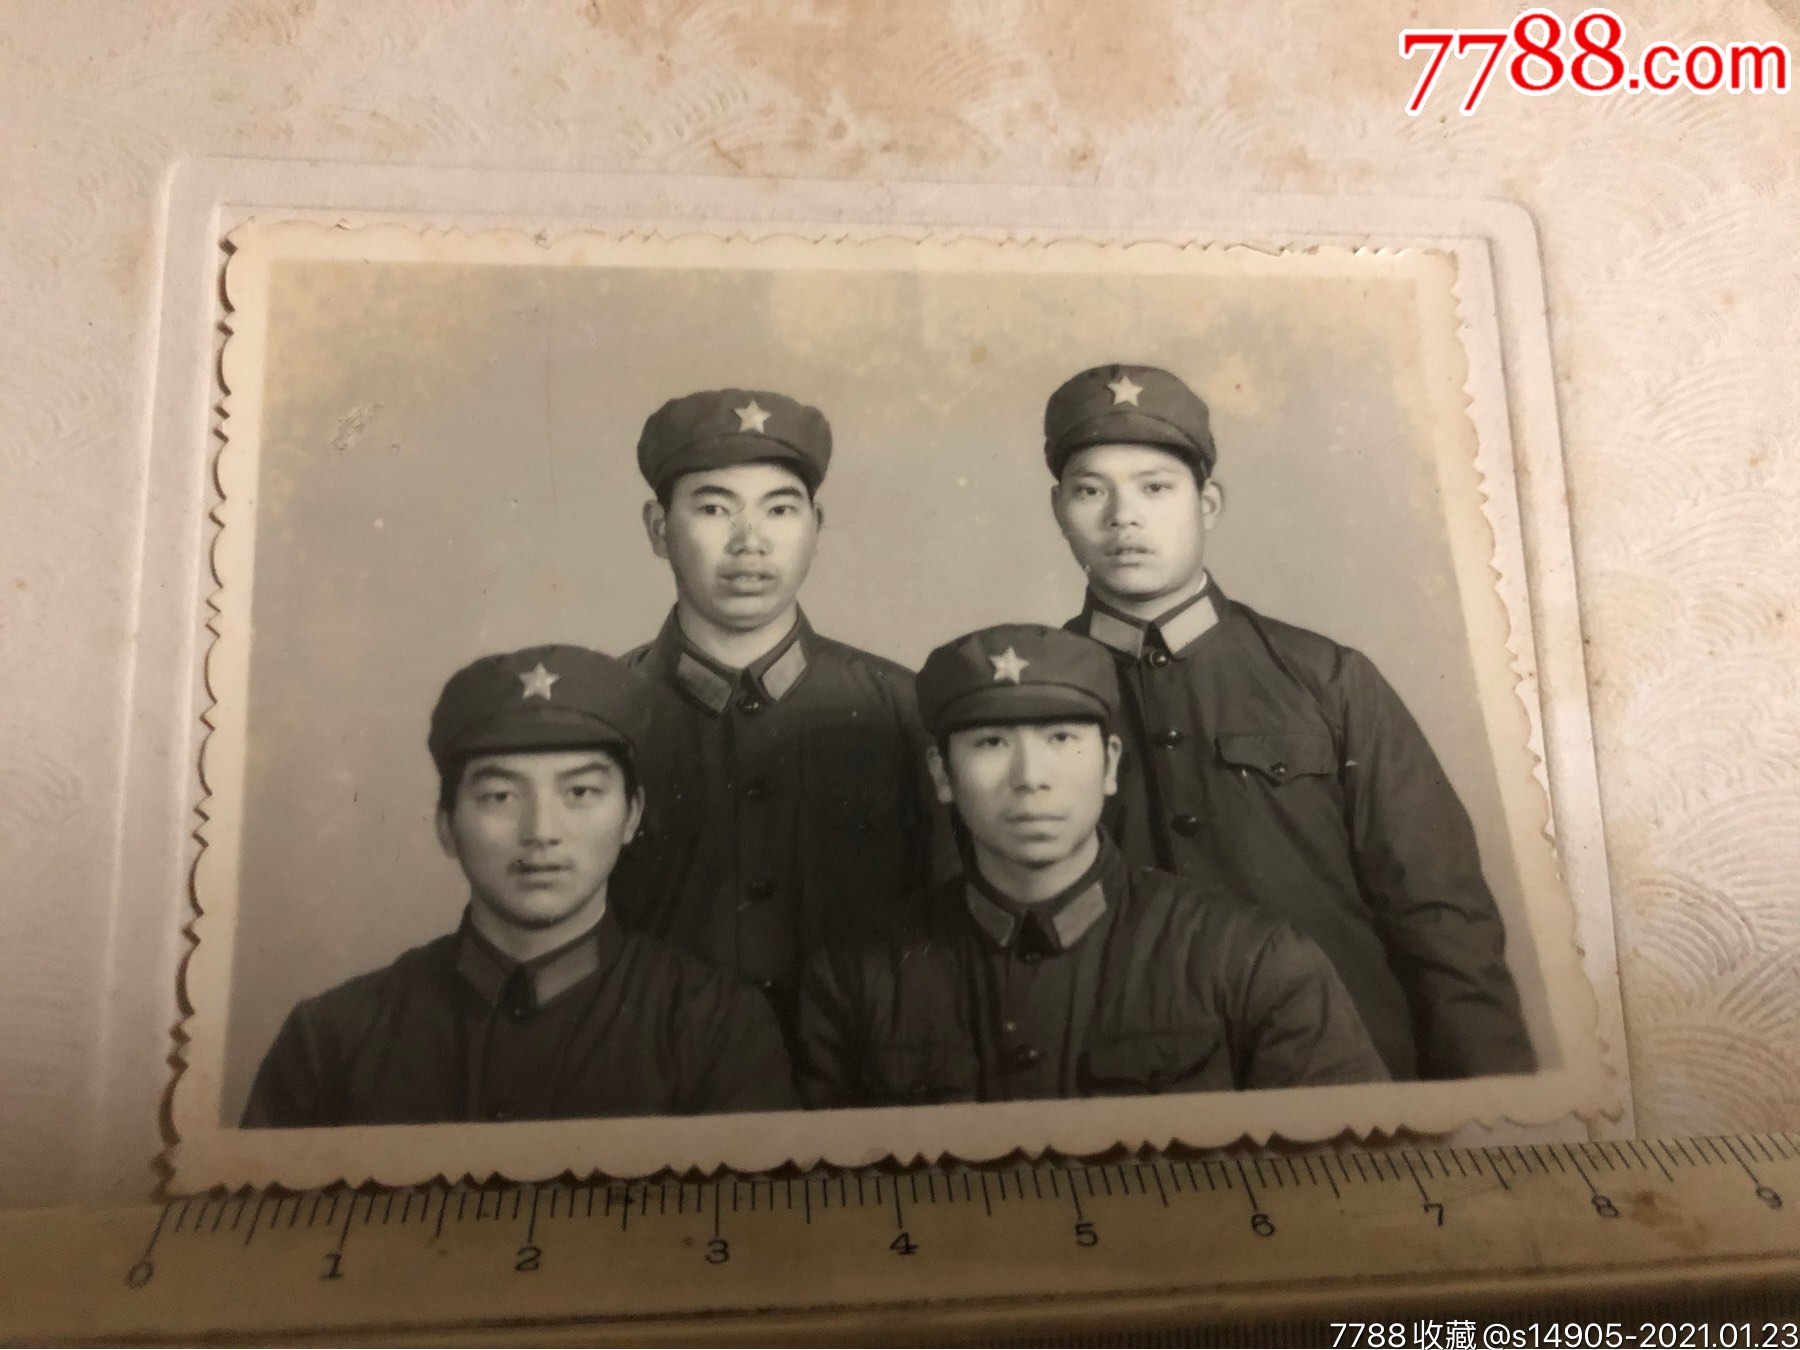 四个解放军战士合影老照片,带帖板,长兴照相-老照片-7788烟标收藏